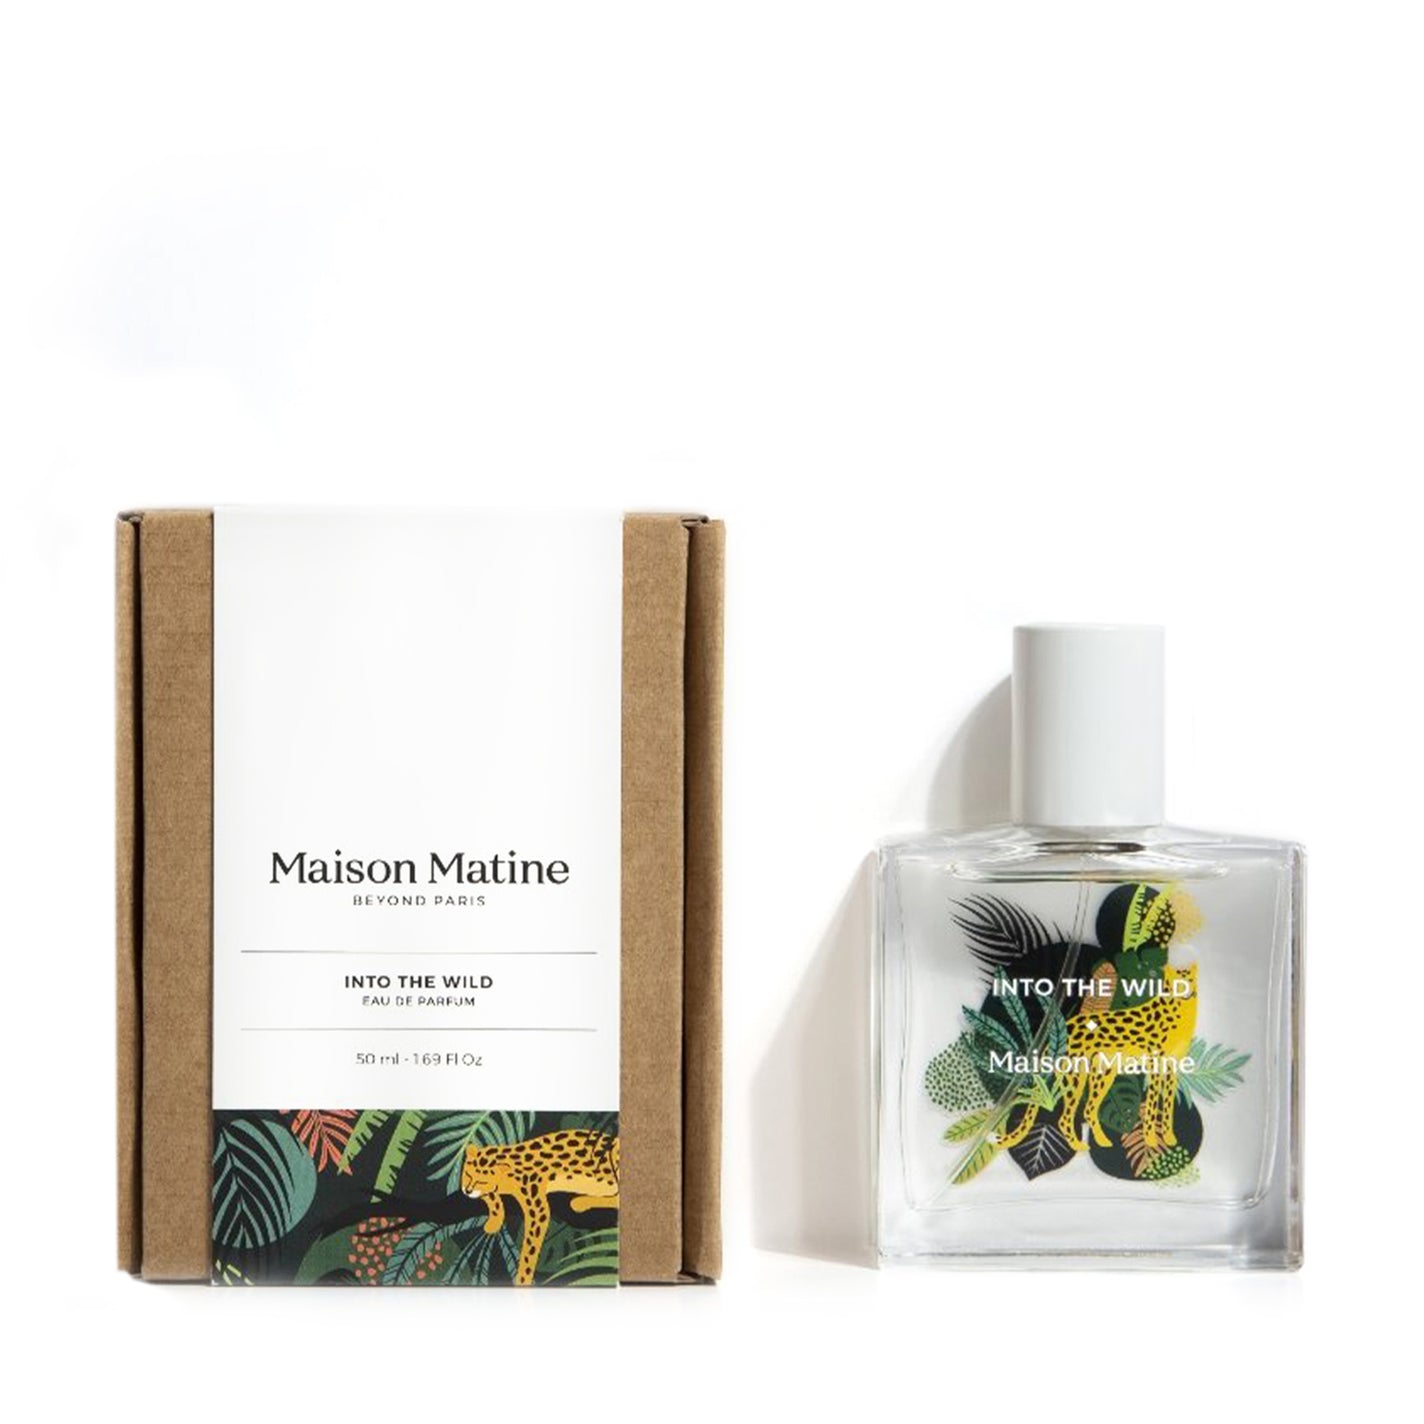 Maison Matine Into the Wild Eau de Parfum - 50ml